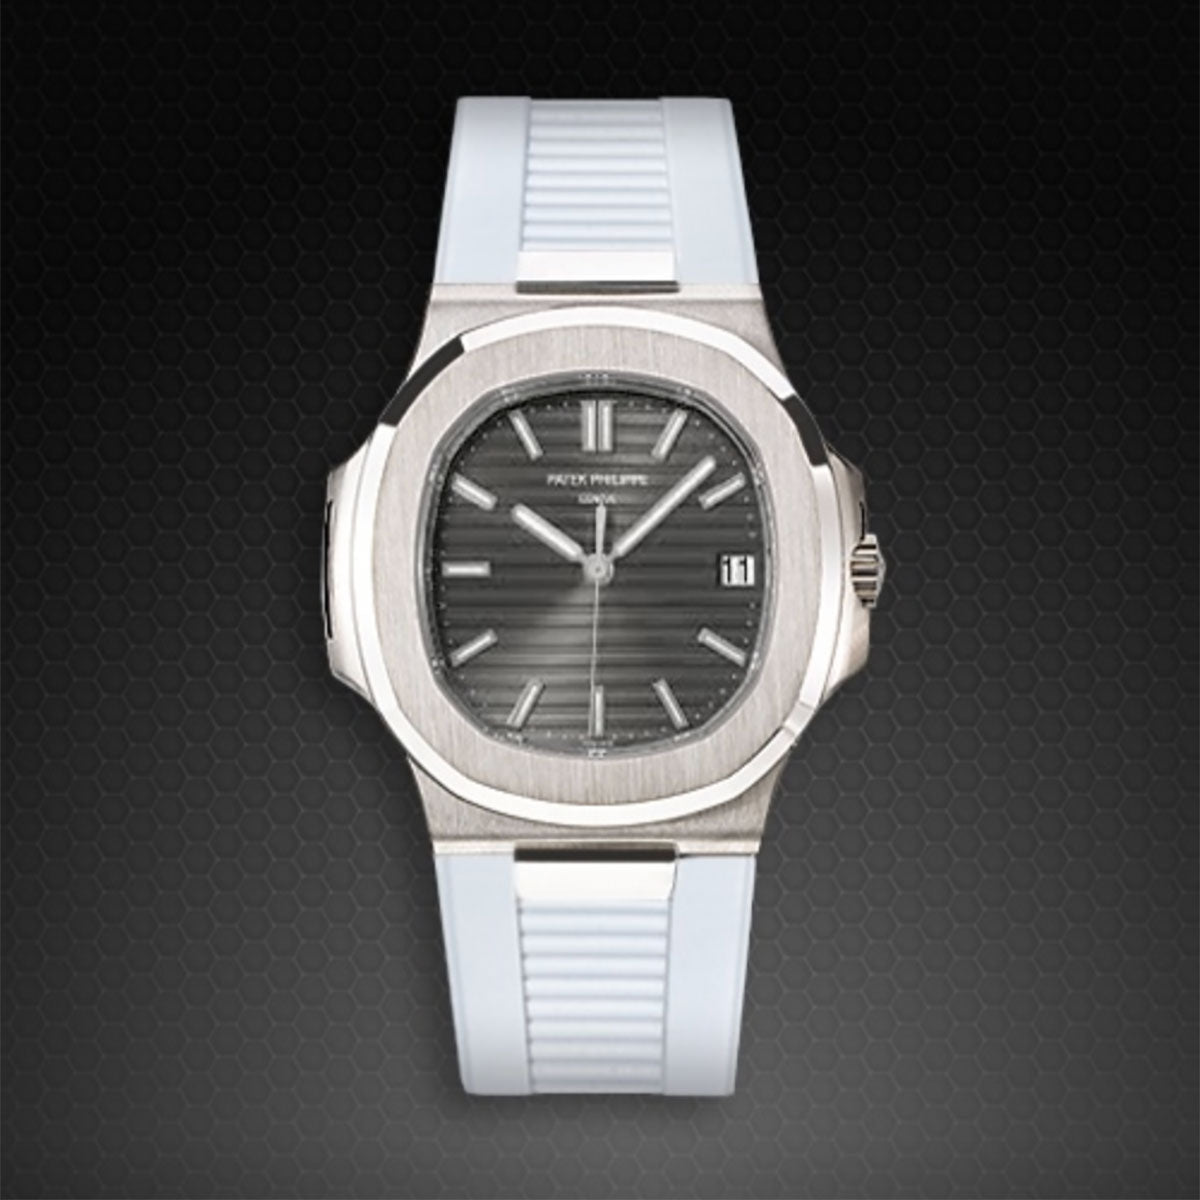 Patek Philippe - Rubber B - Bracelet caoutchouc pour Nautilus 5711 WG / RG / YG - watch band leather strap - ABP Concept -